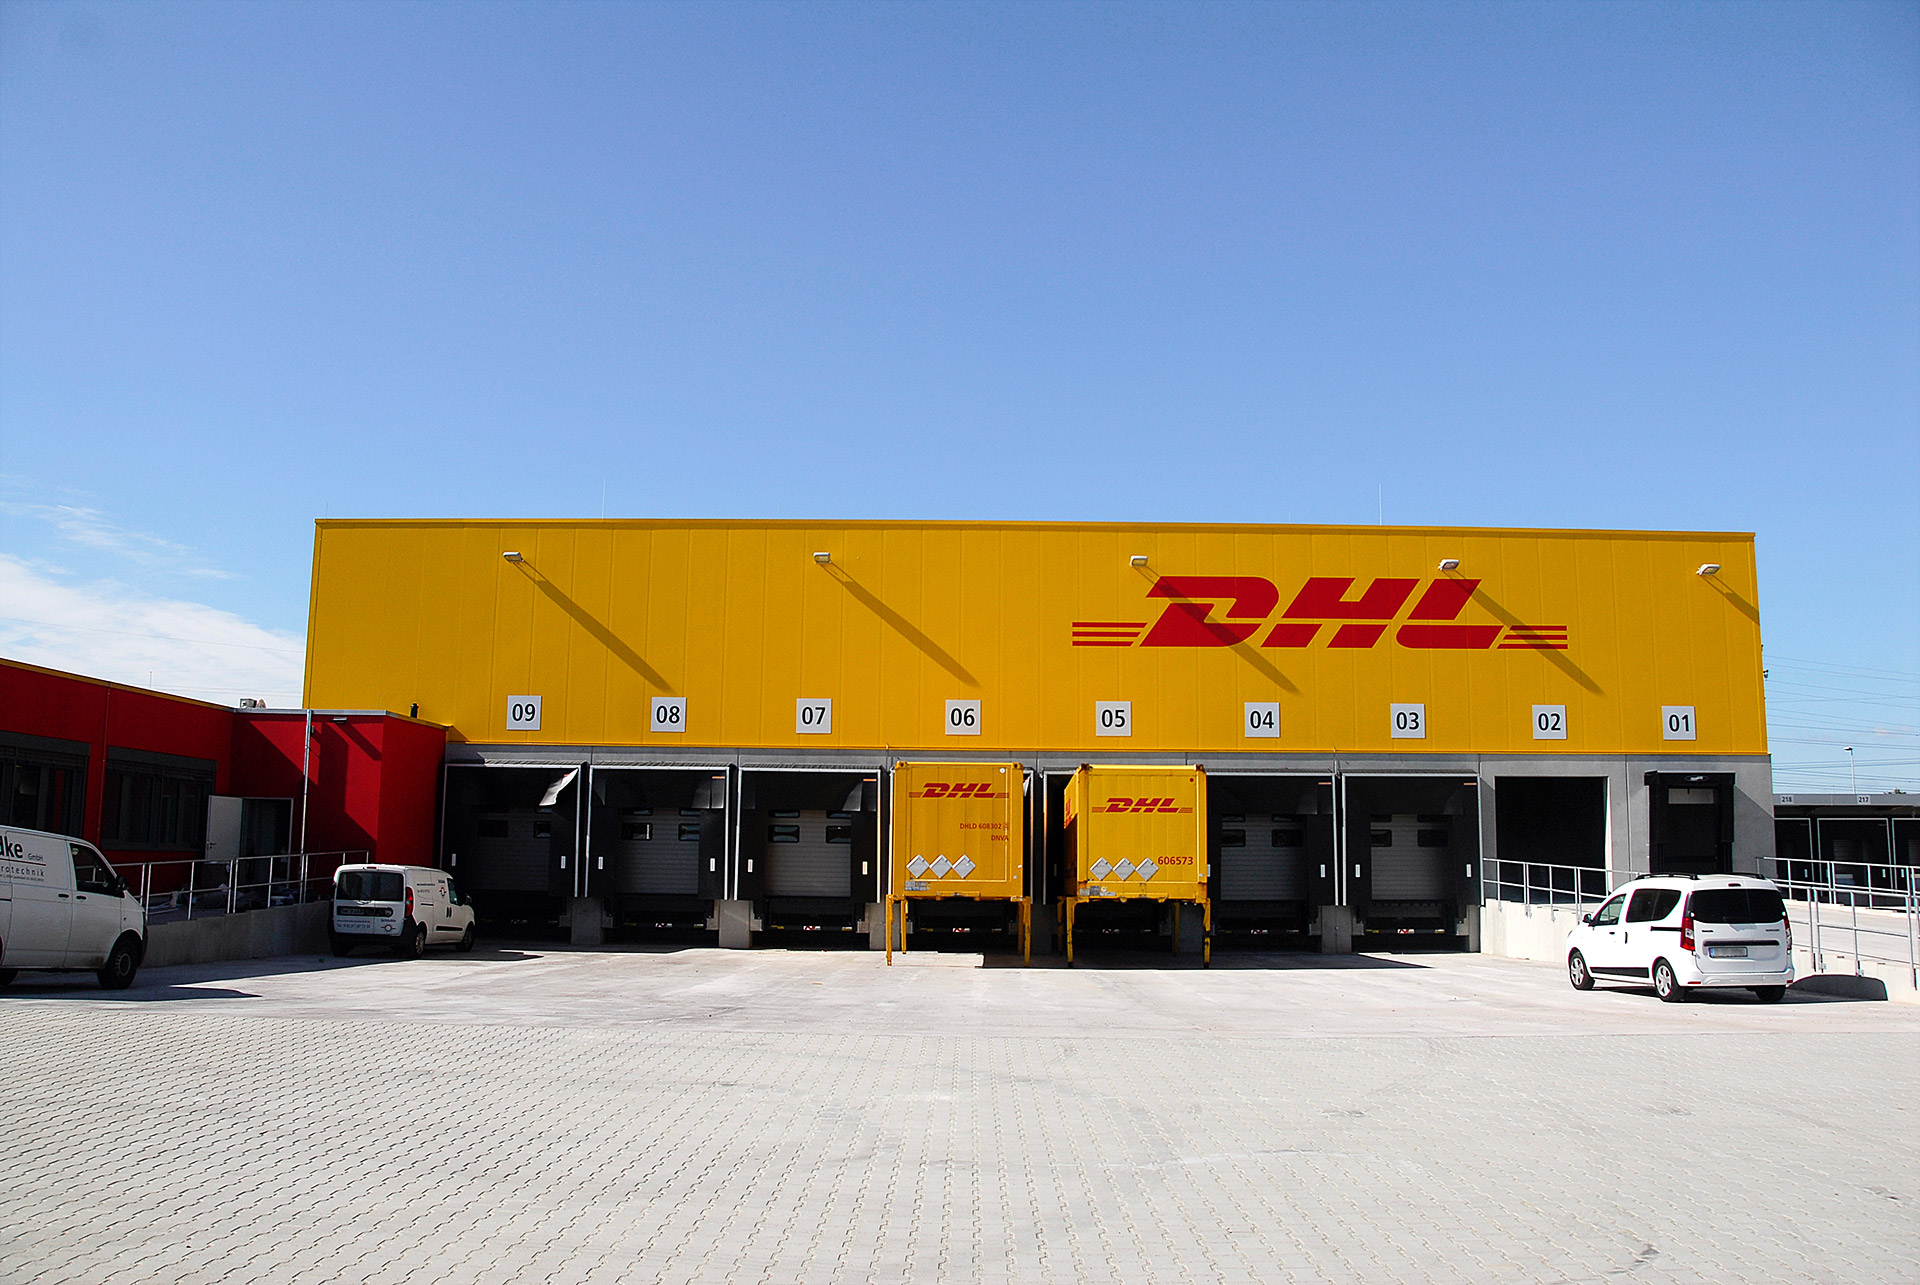 Fassade des Logistikzentrums mit horizontalen Paneelen in Sonderfarbton